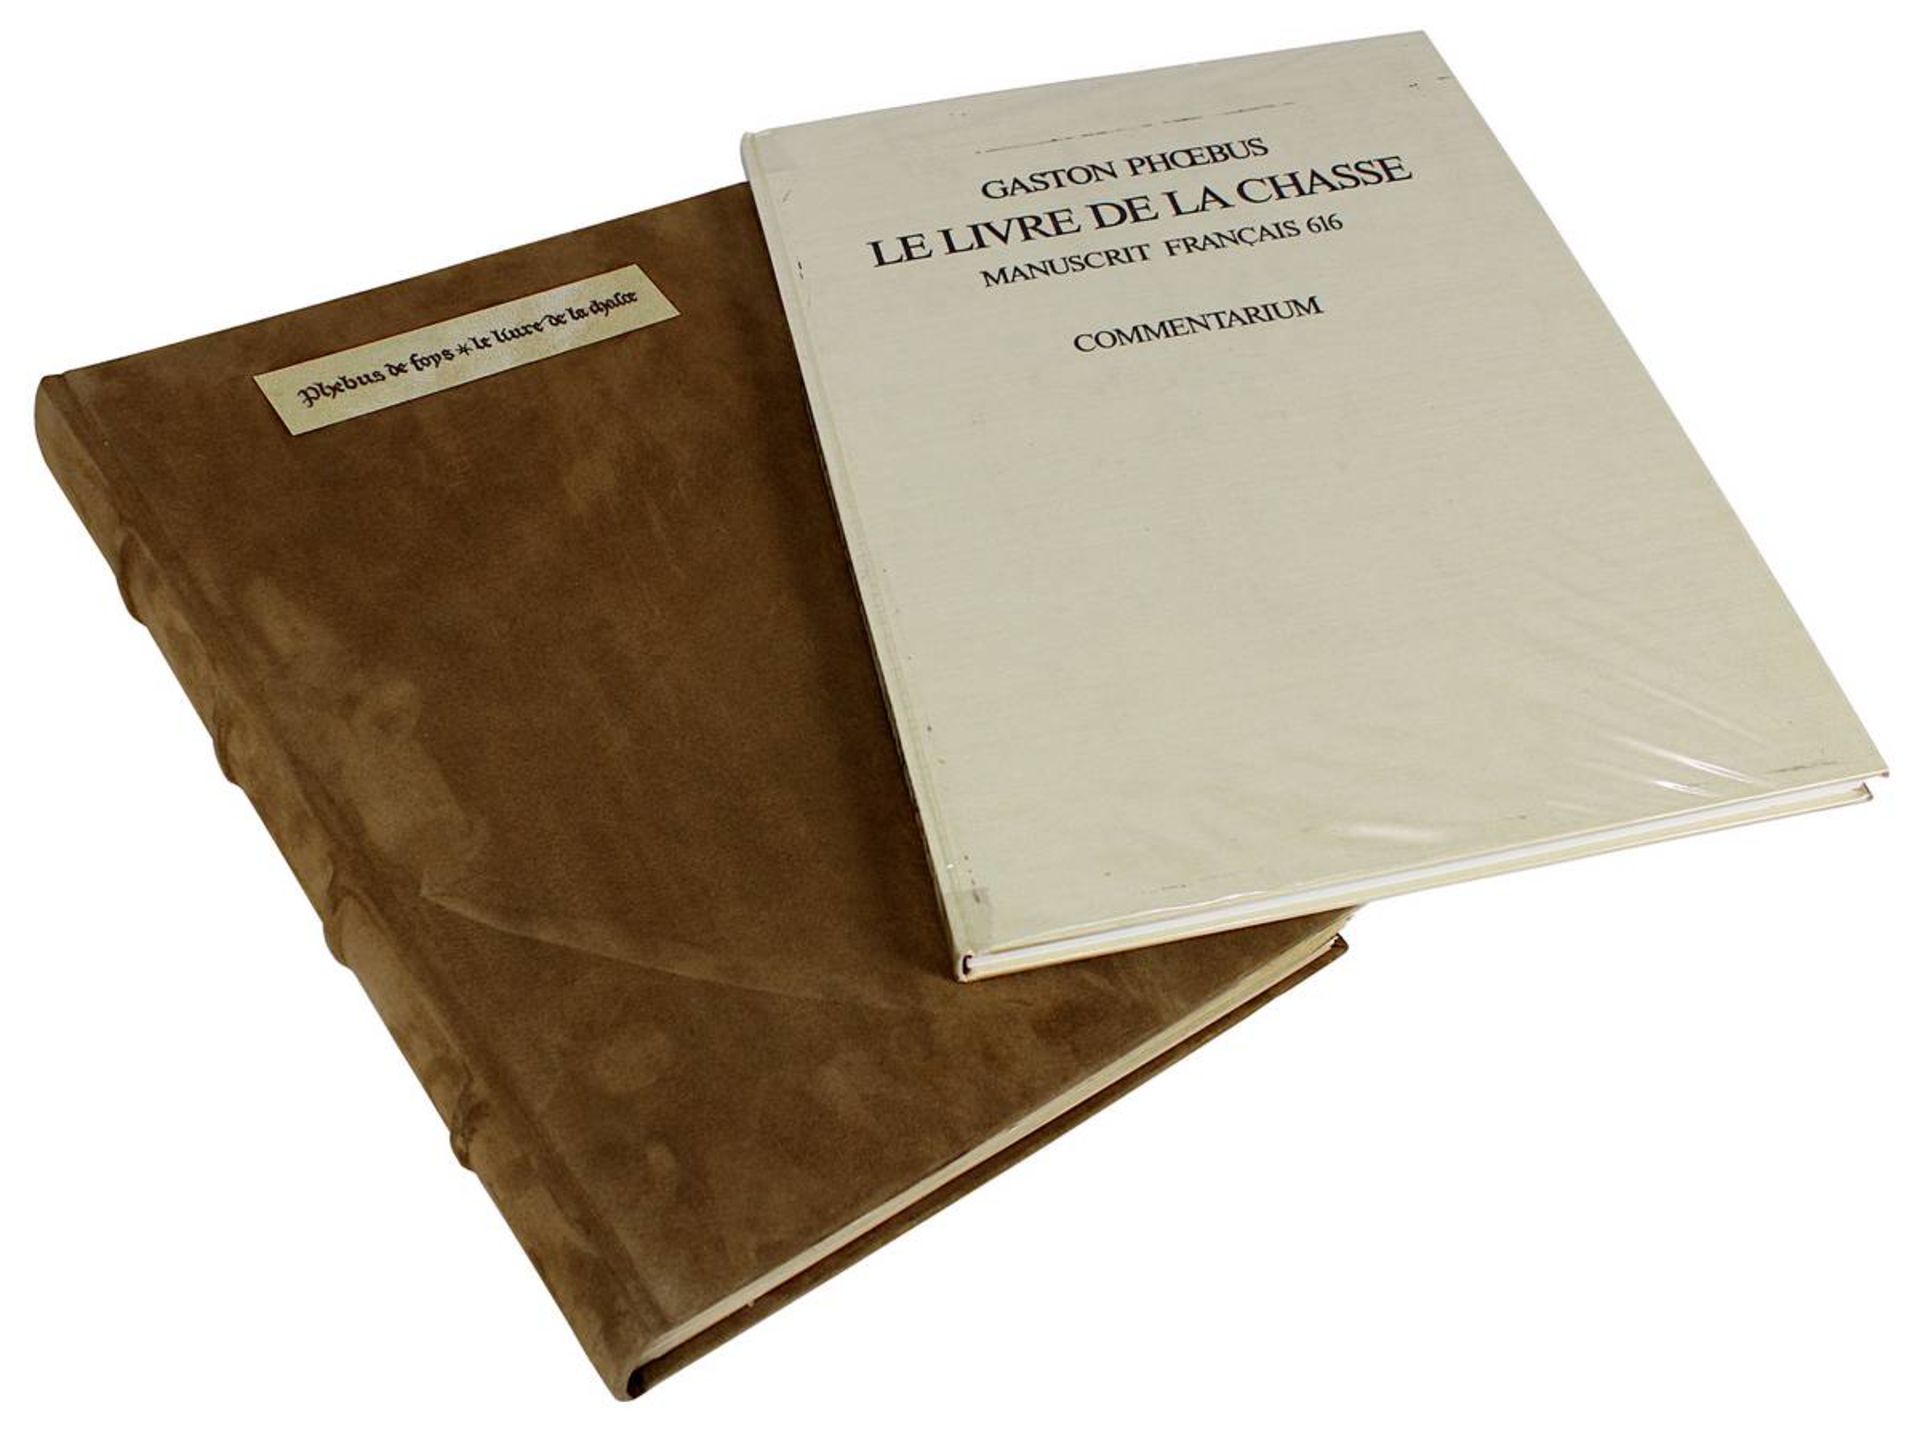 Phoebus, Gaston, Le Livre de la Chasse, vollständige farbige Faksimile - Ausgabe des Originalcodex - Image 2 of 2